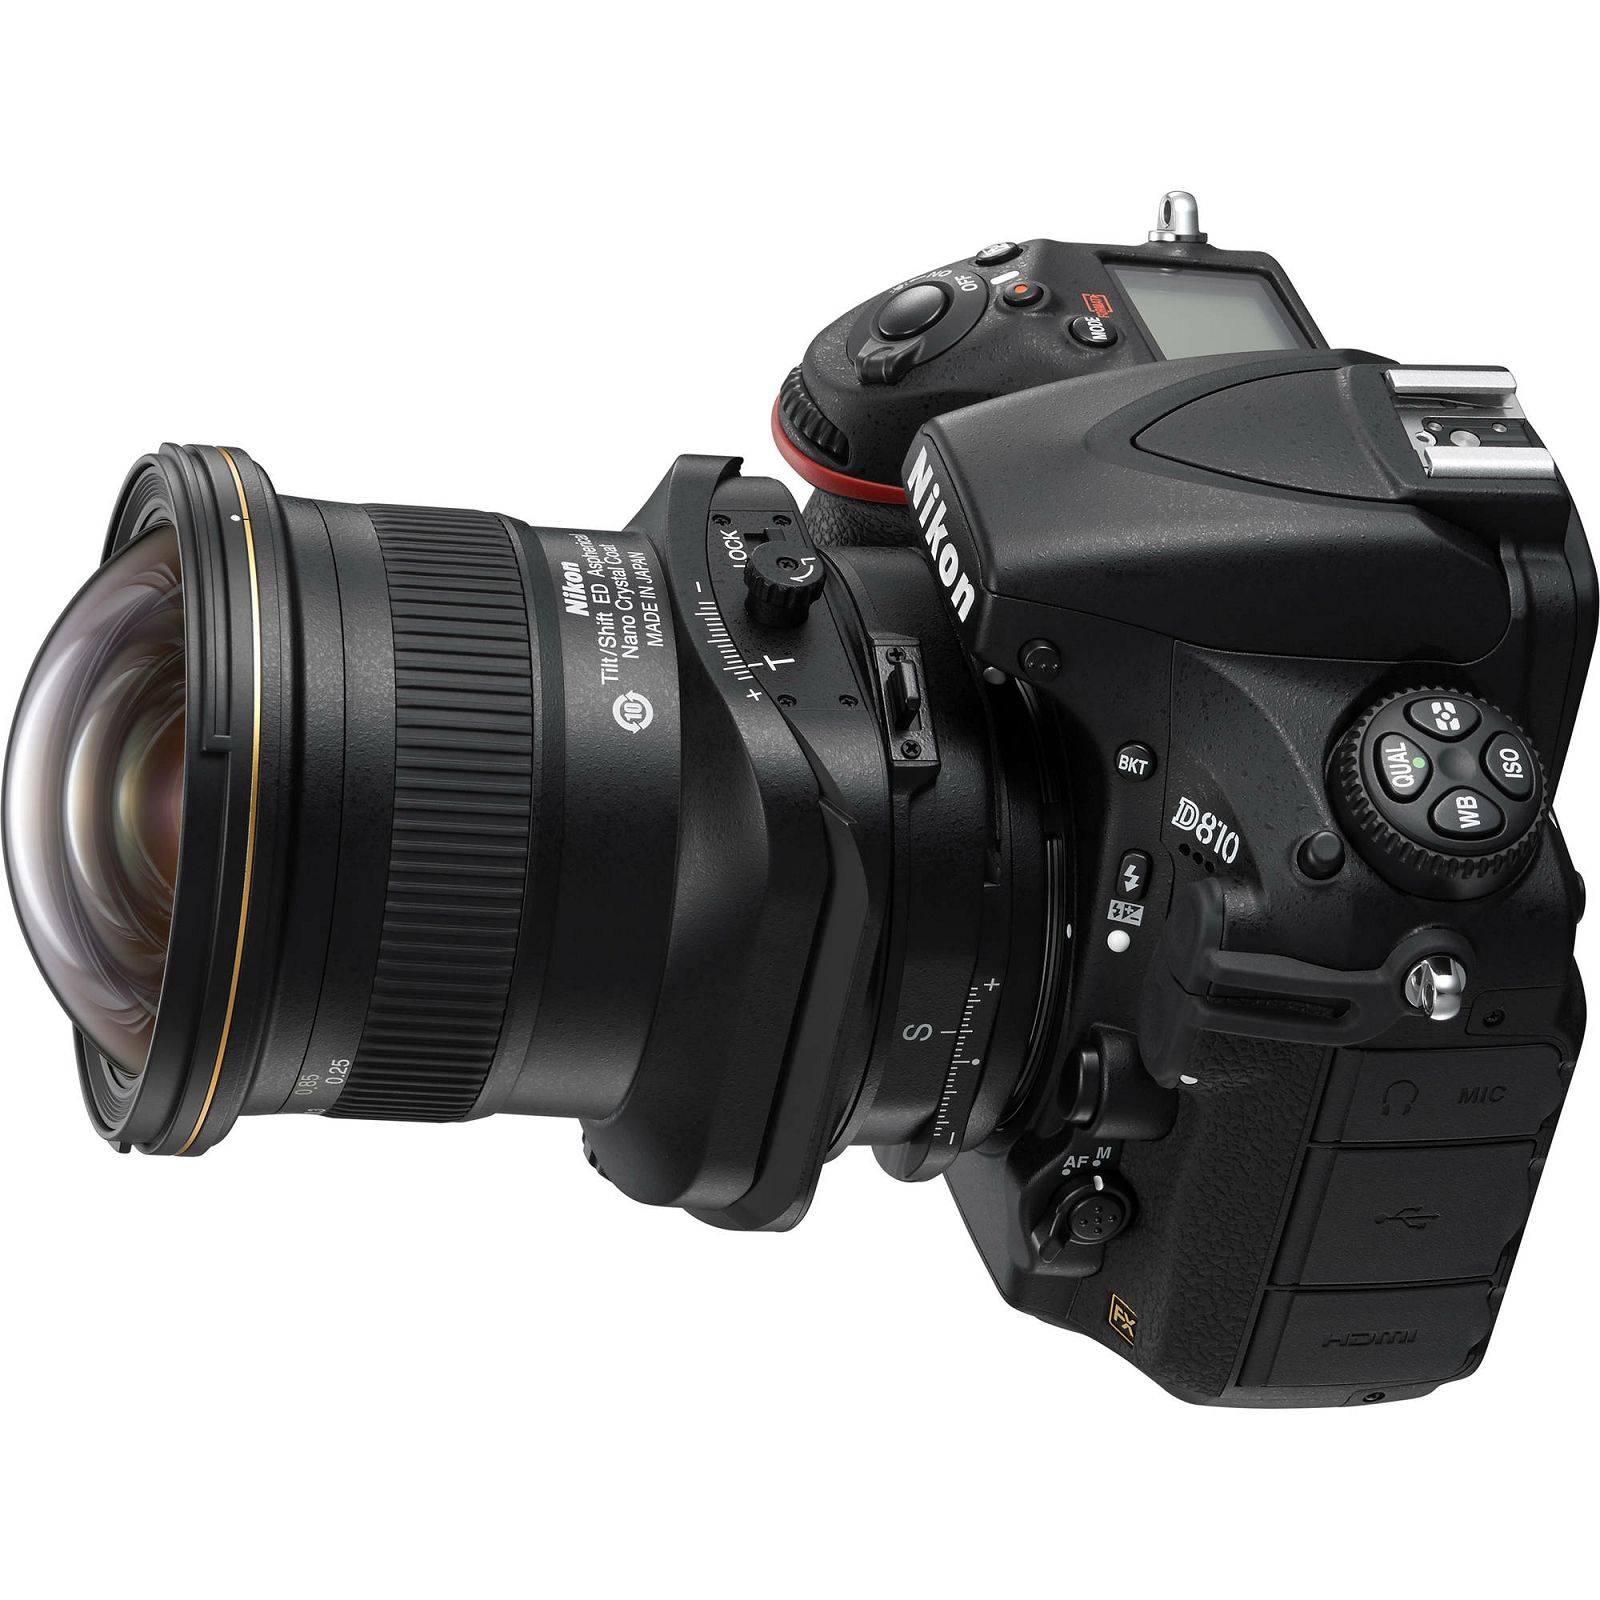 Nikon AI PC-E 19mm f/4E ED tilt-shift širokokutni objektiv Nikkor 19 f/4 D F4 4.0 E Professional prime lens (JAA639DA)